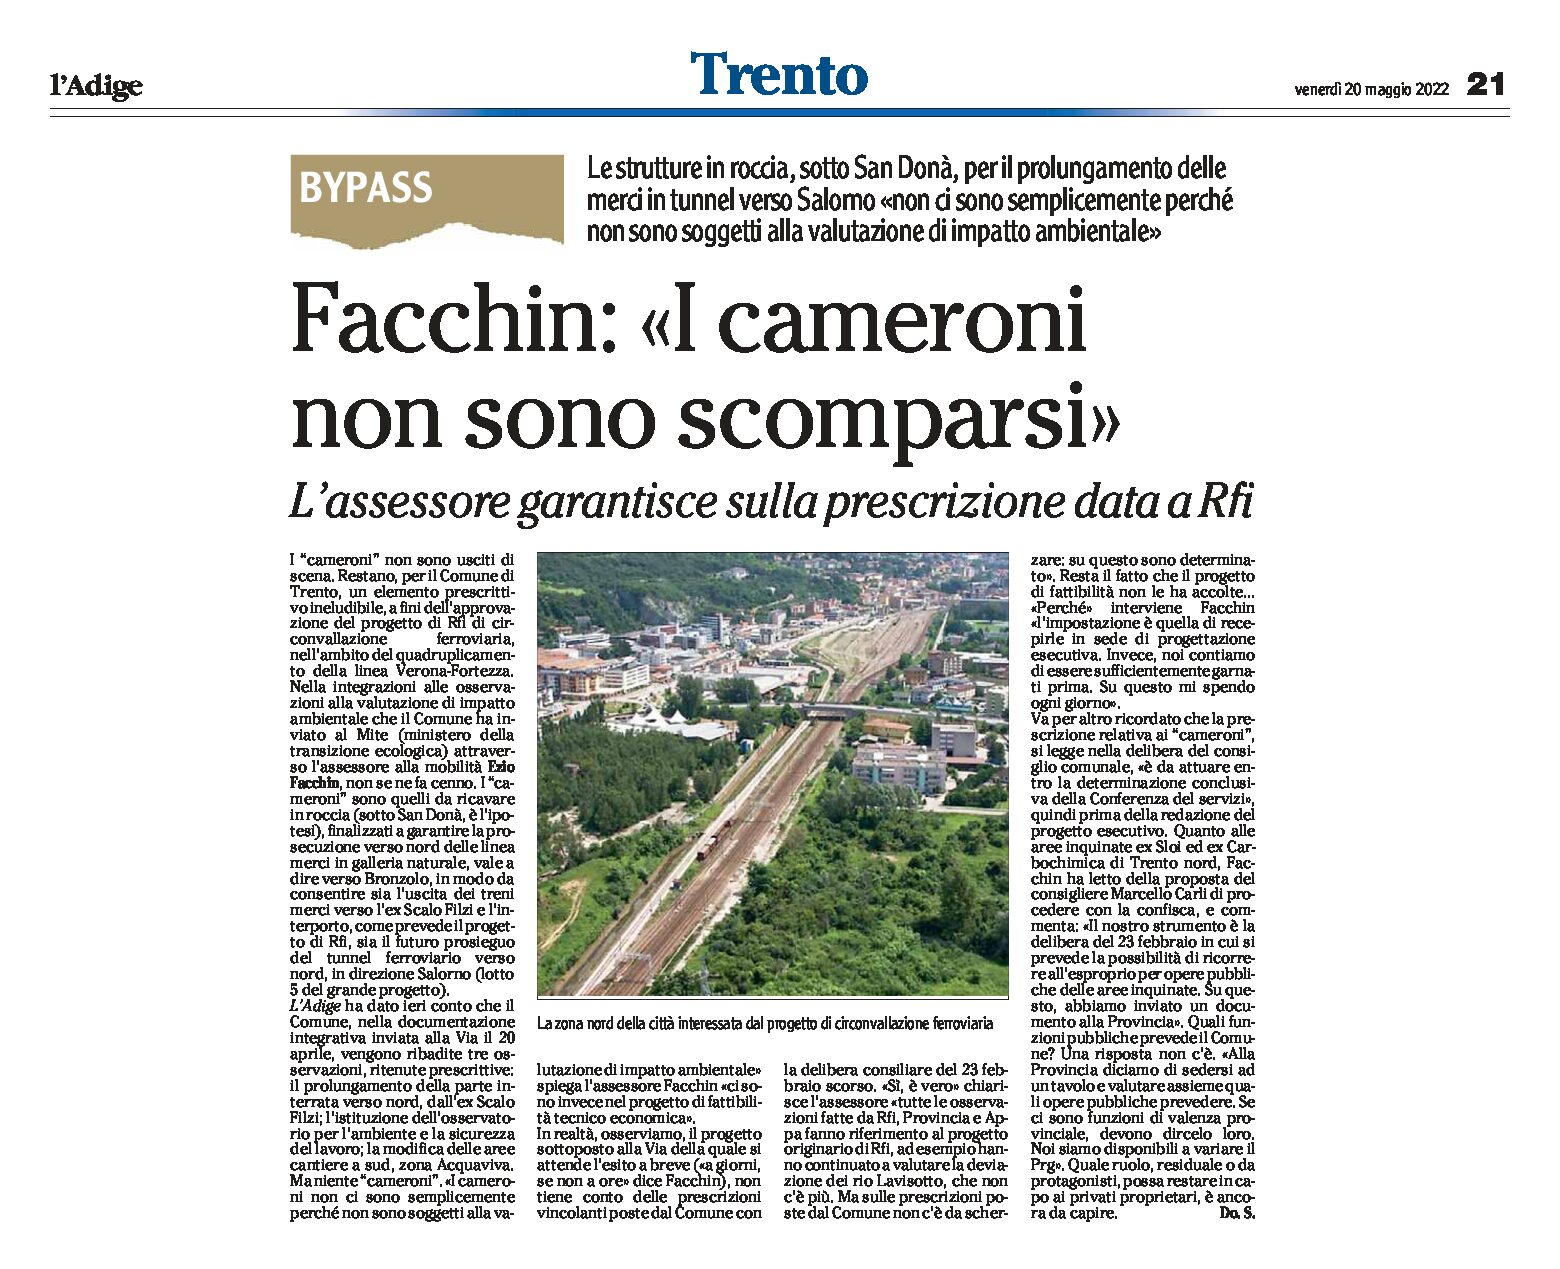 Trento, bypass: Facchin “i cameroni non sono scomparsi”